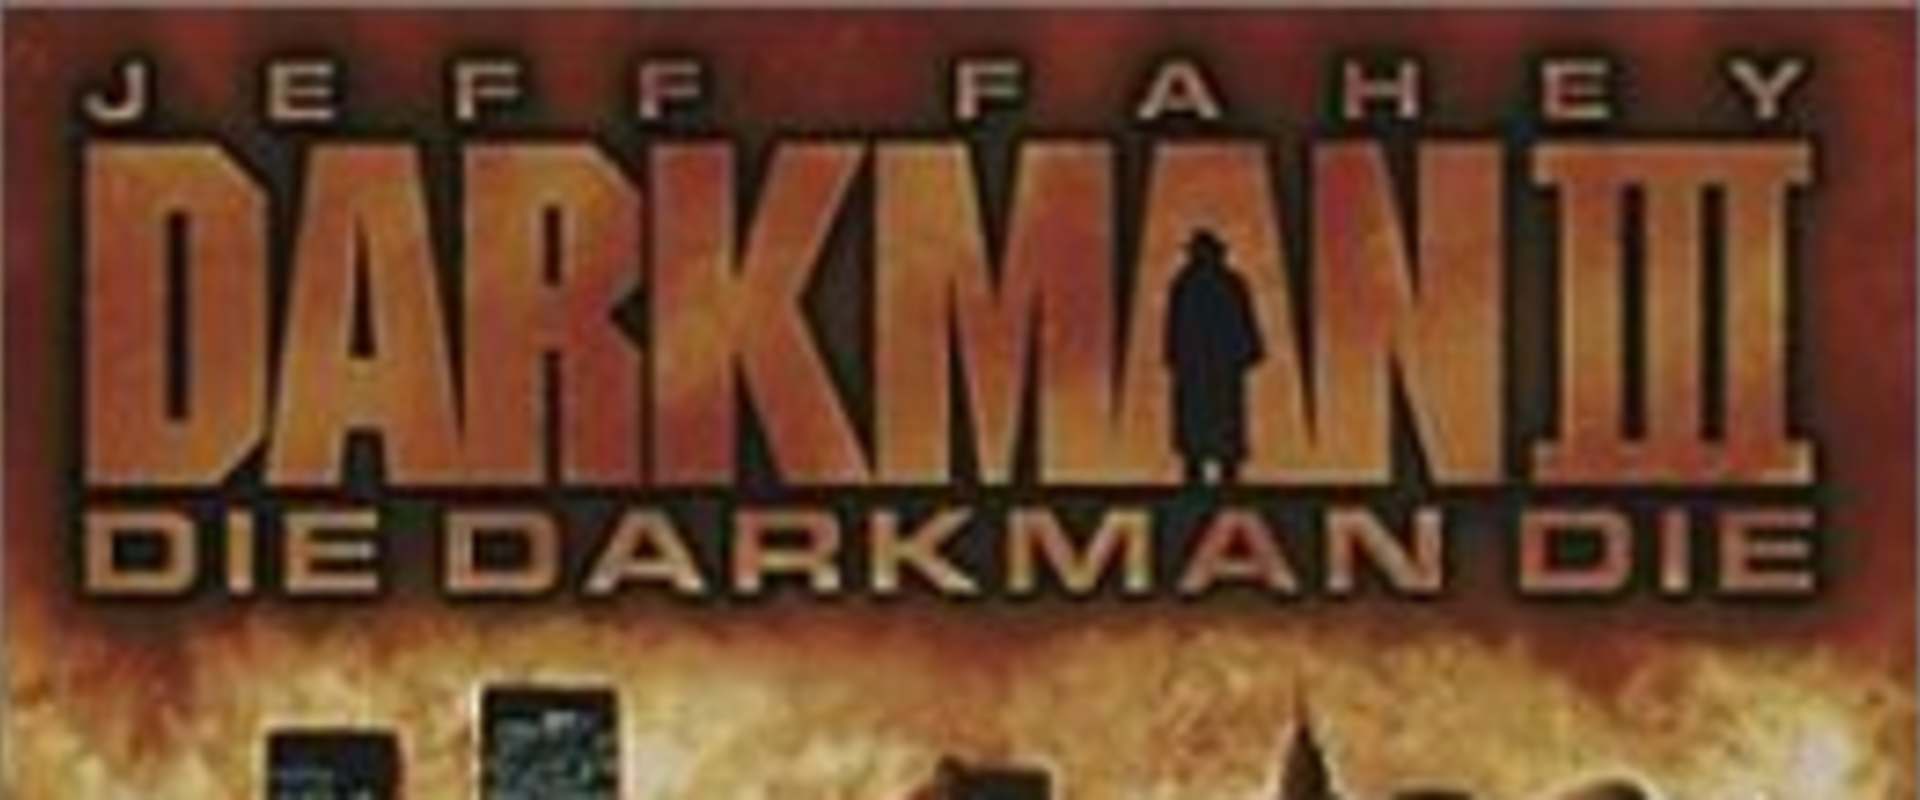 Darkman III: Die Darkman Die background 2